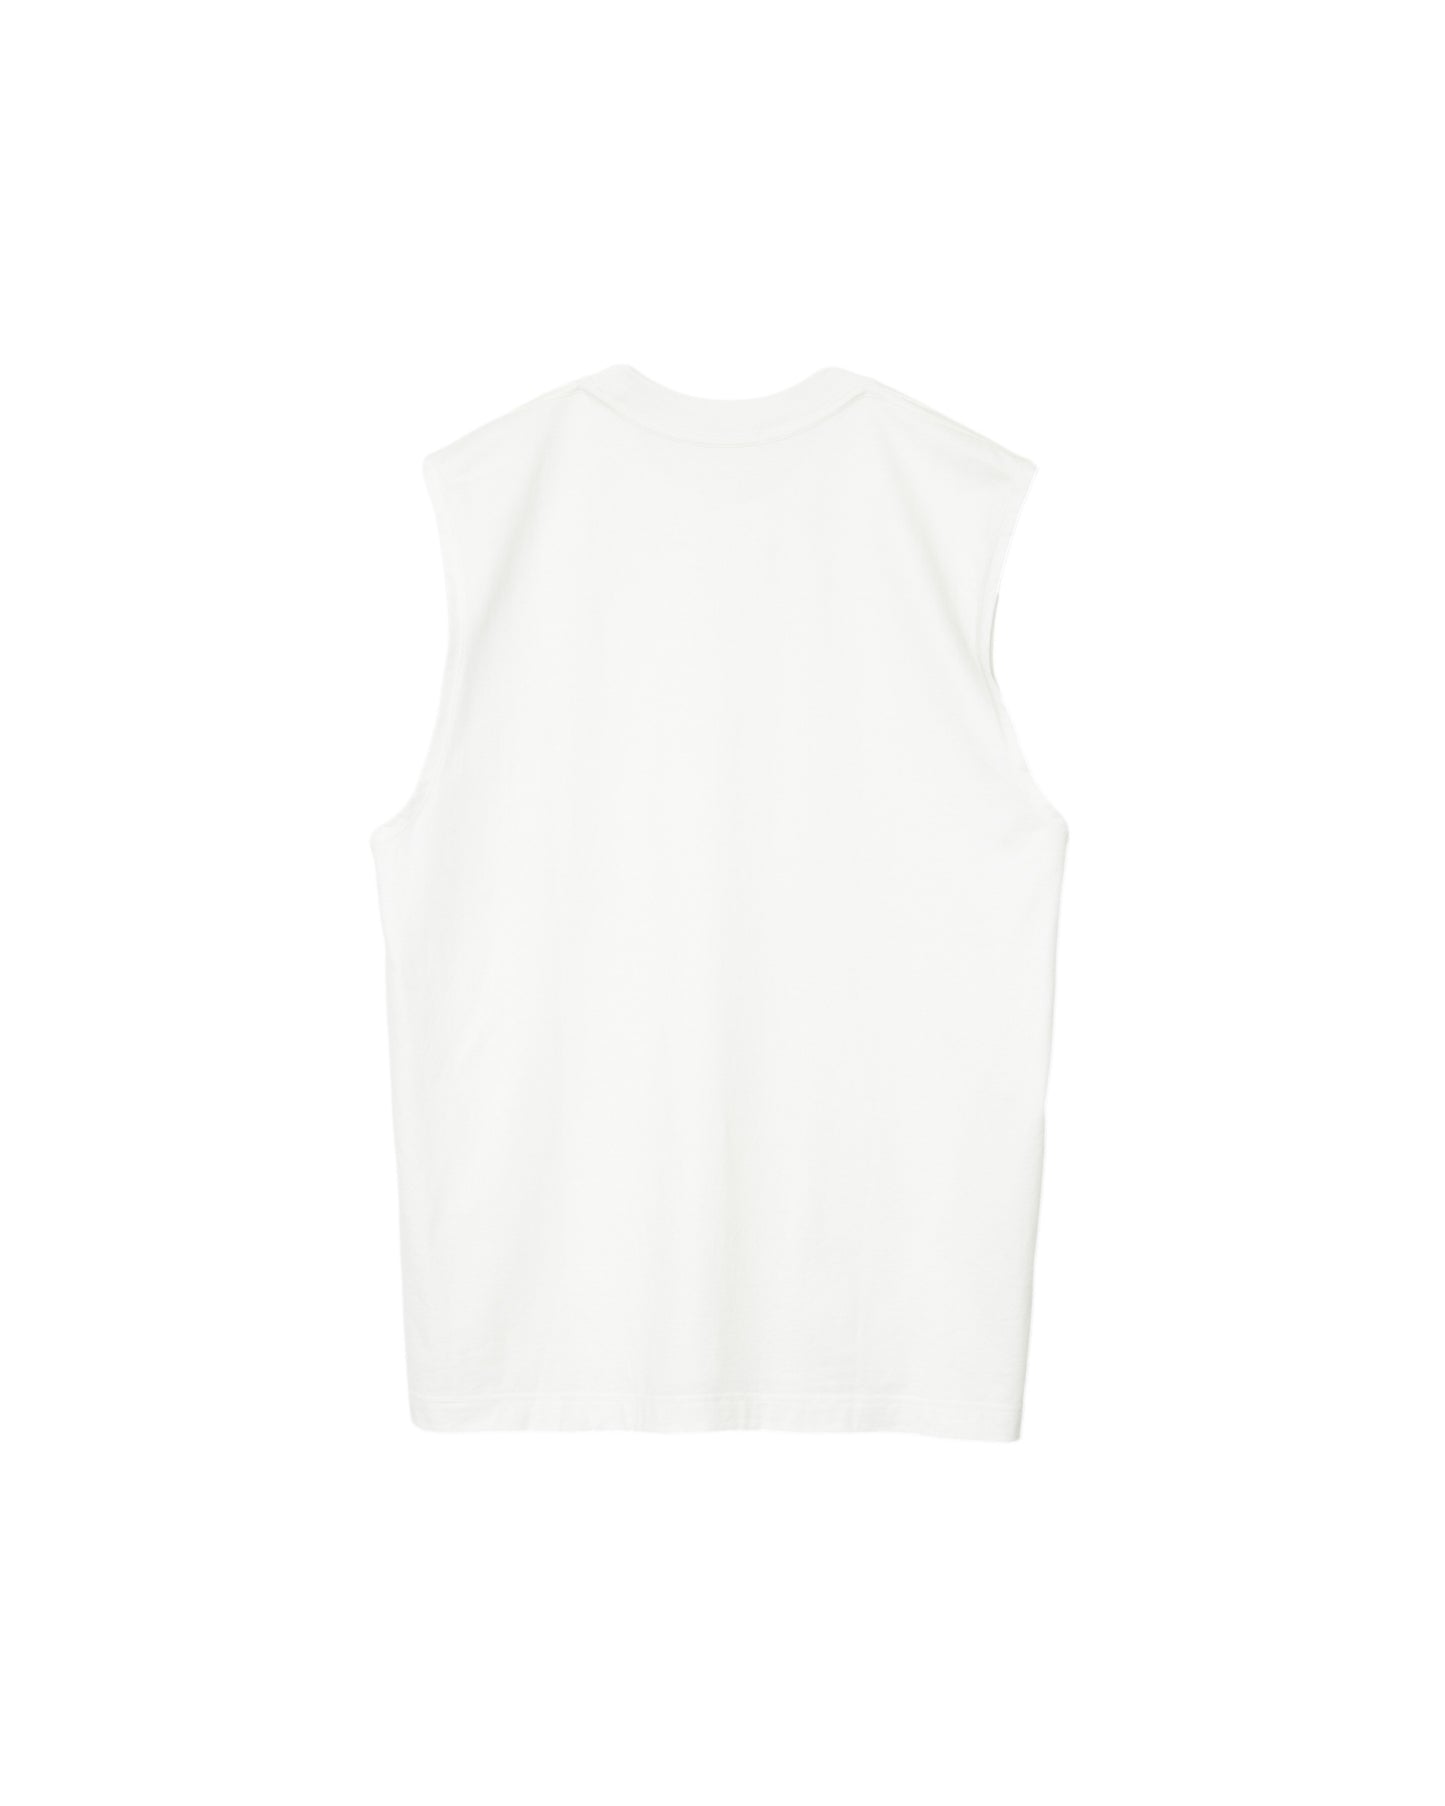 MATSUFUJI / Sleeveless Shirt “WHITE”